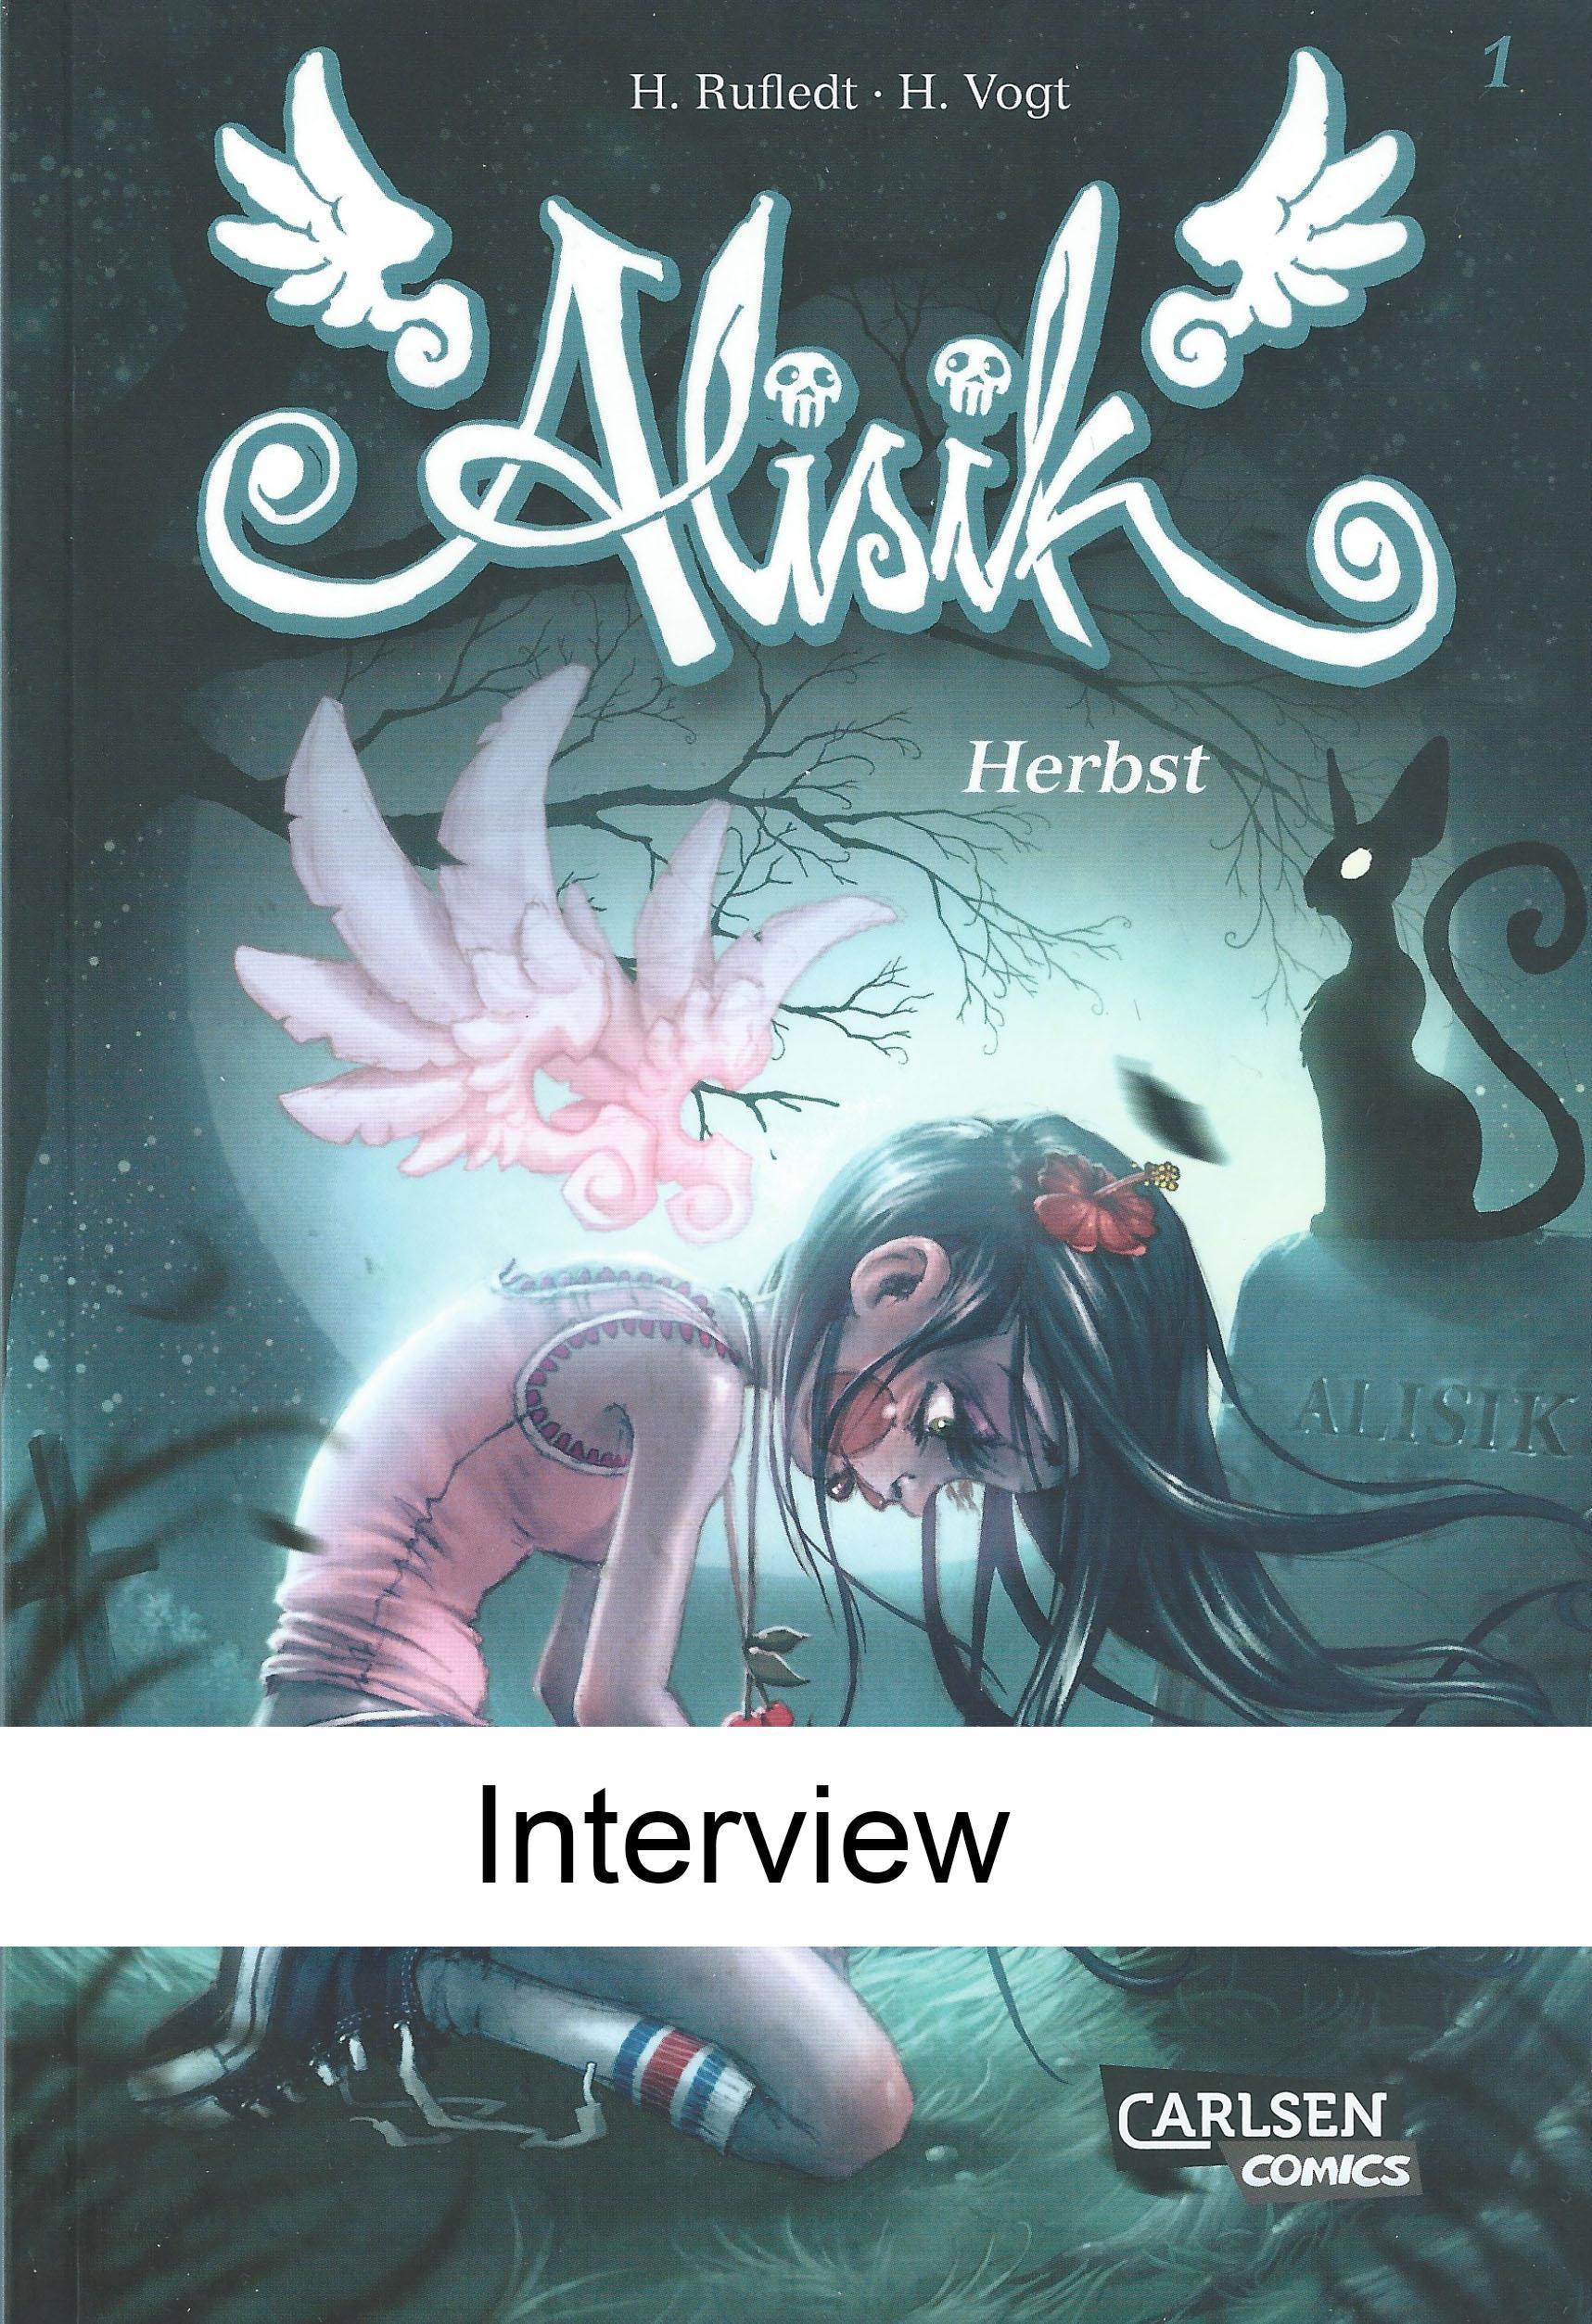 [Interview] Helge Vogt über seine Comicreihe Alisik